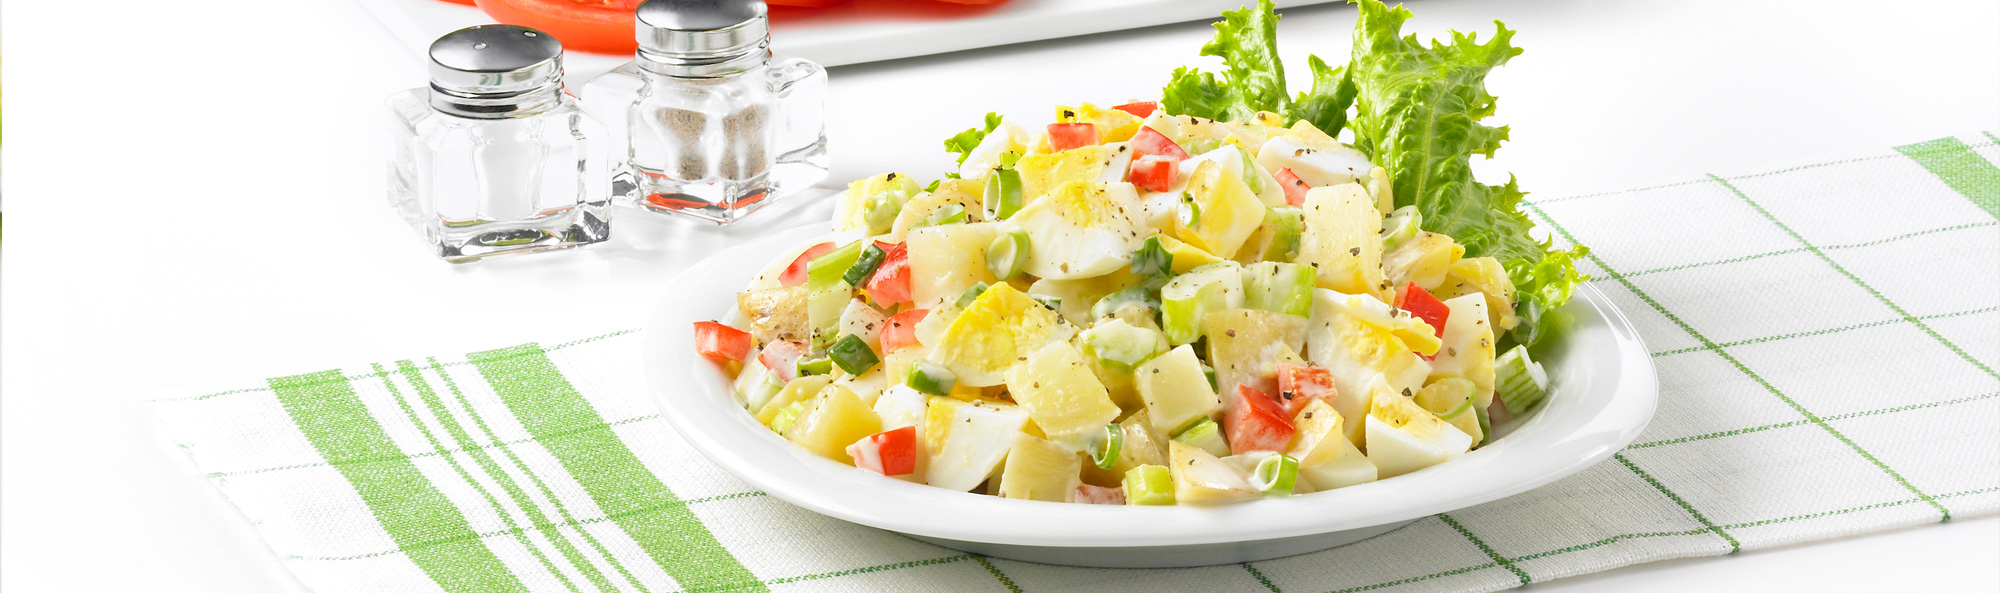 Home-style Egg and Potato Salad